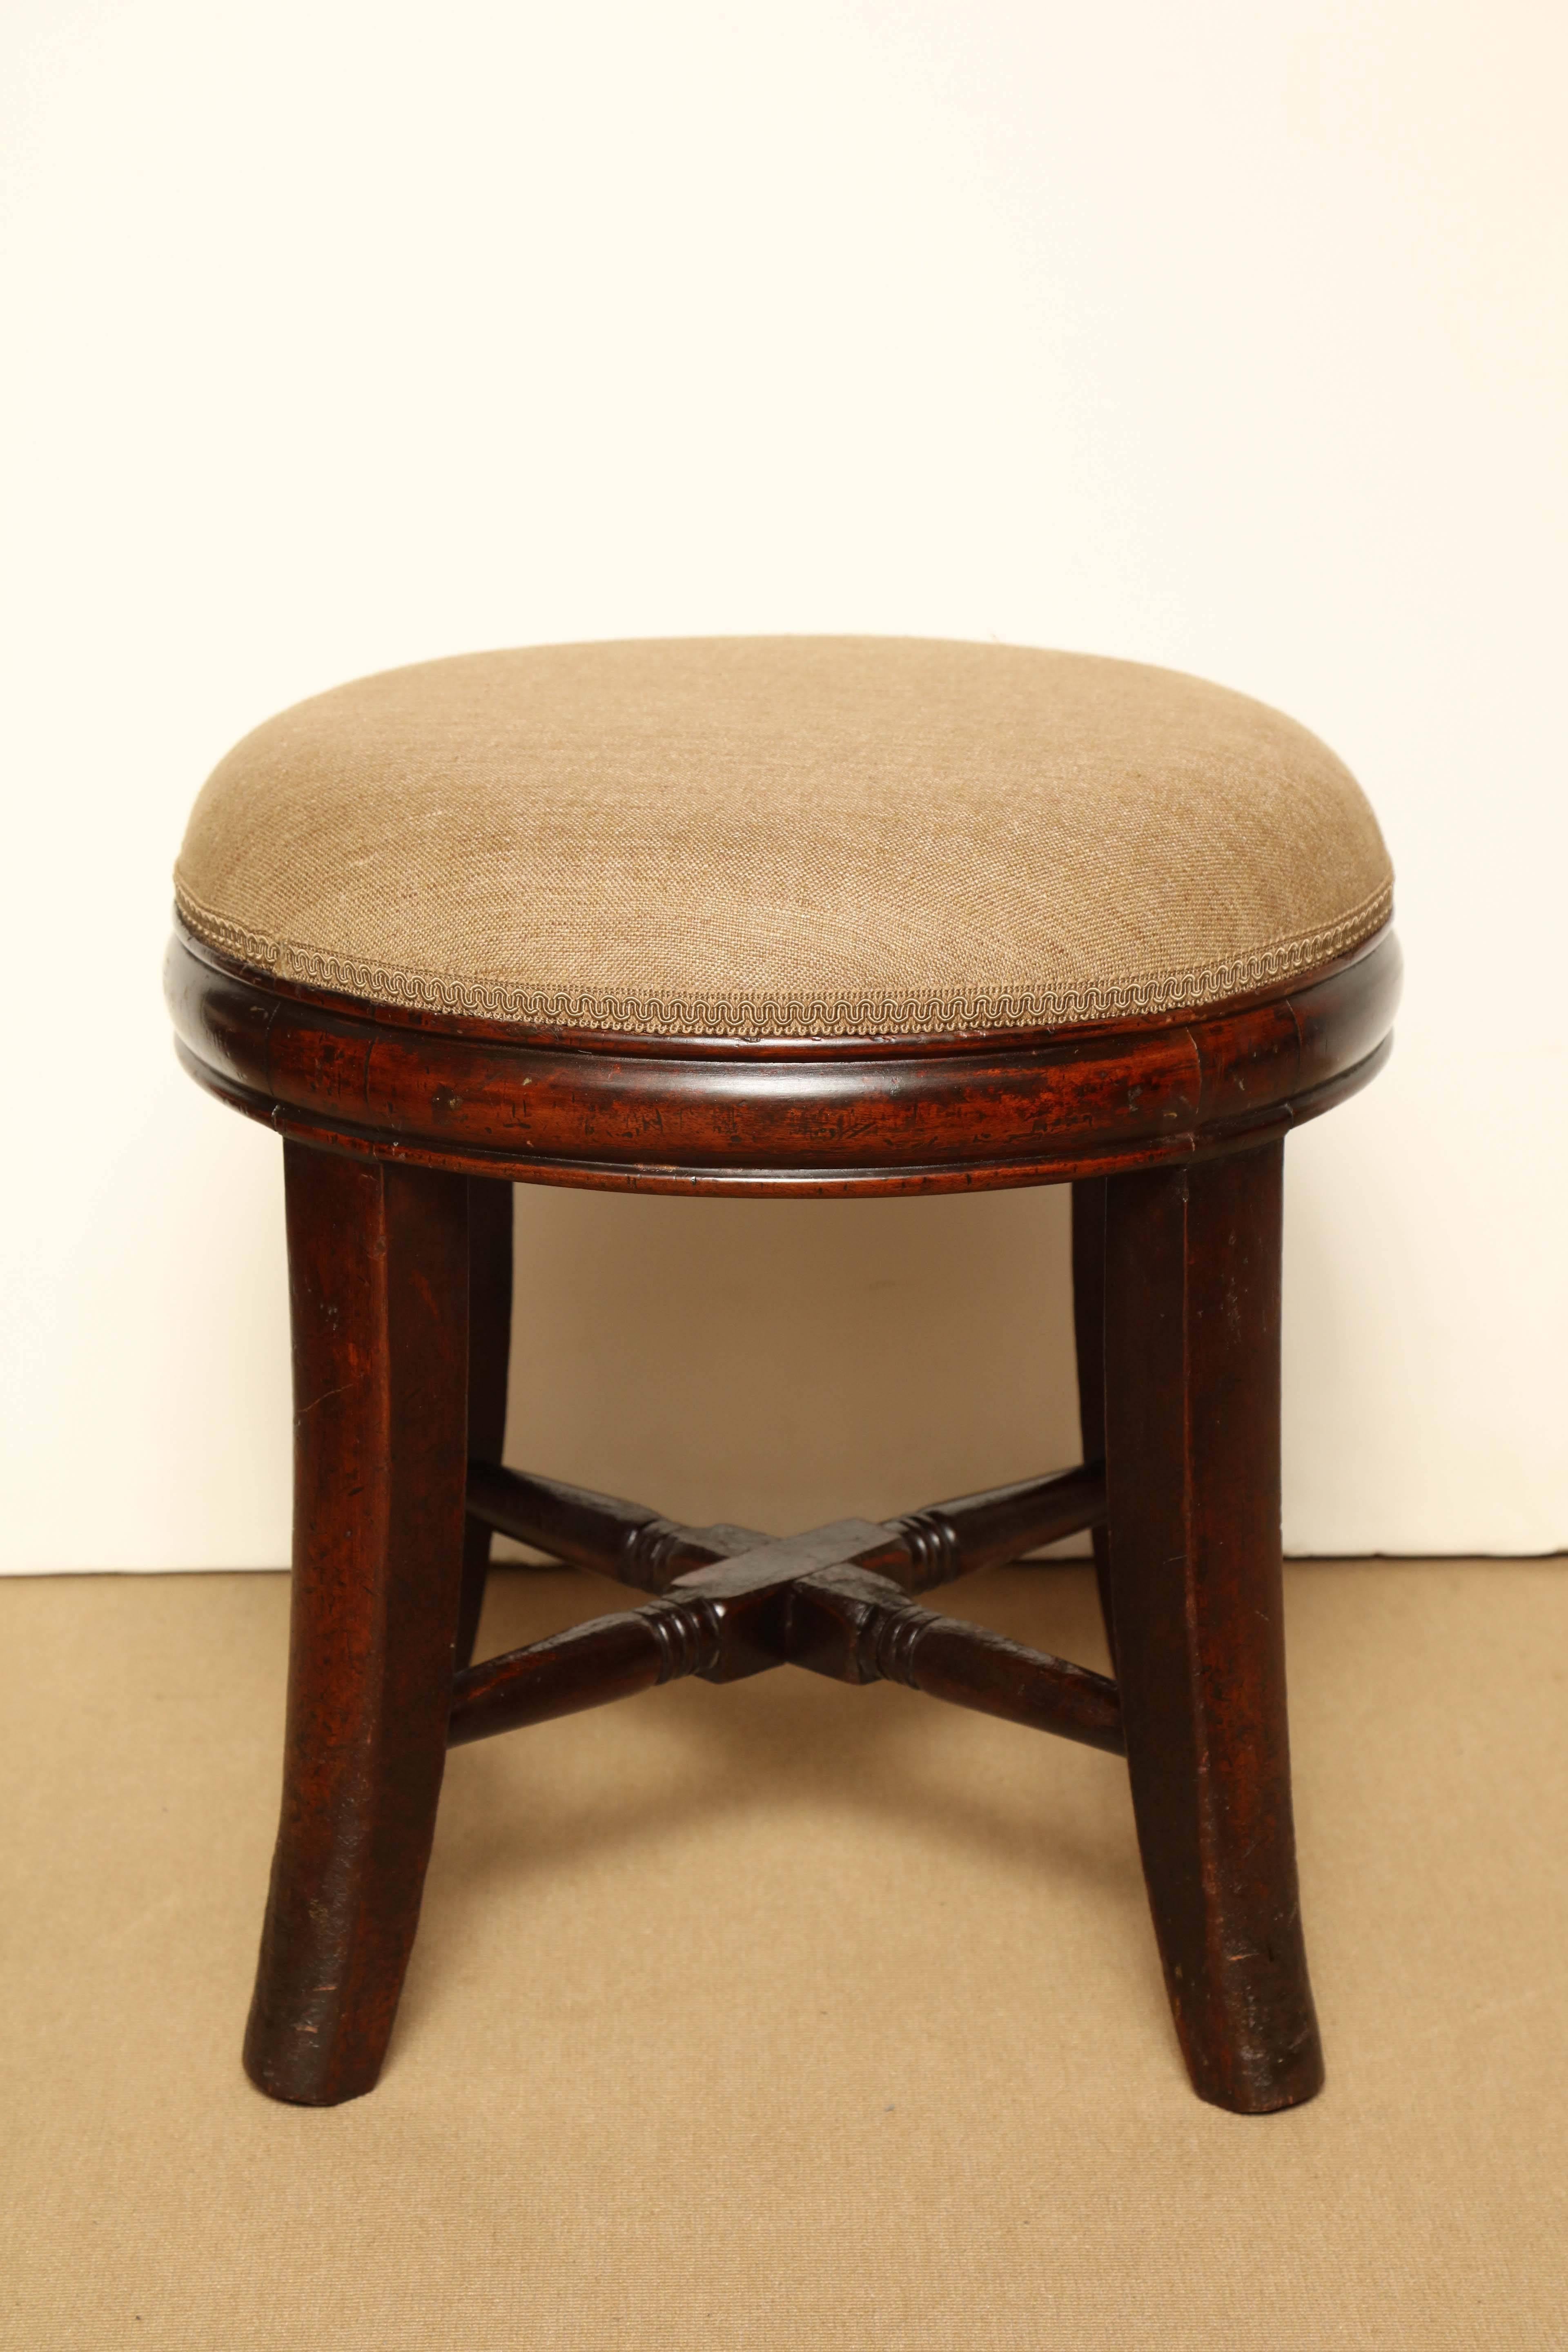 19th century english, mahogany stool.